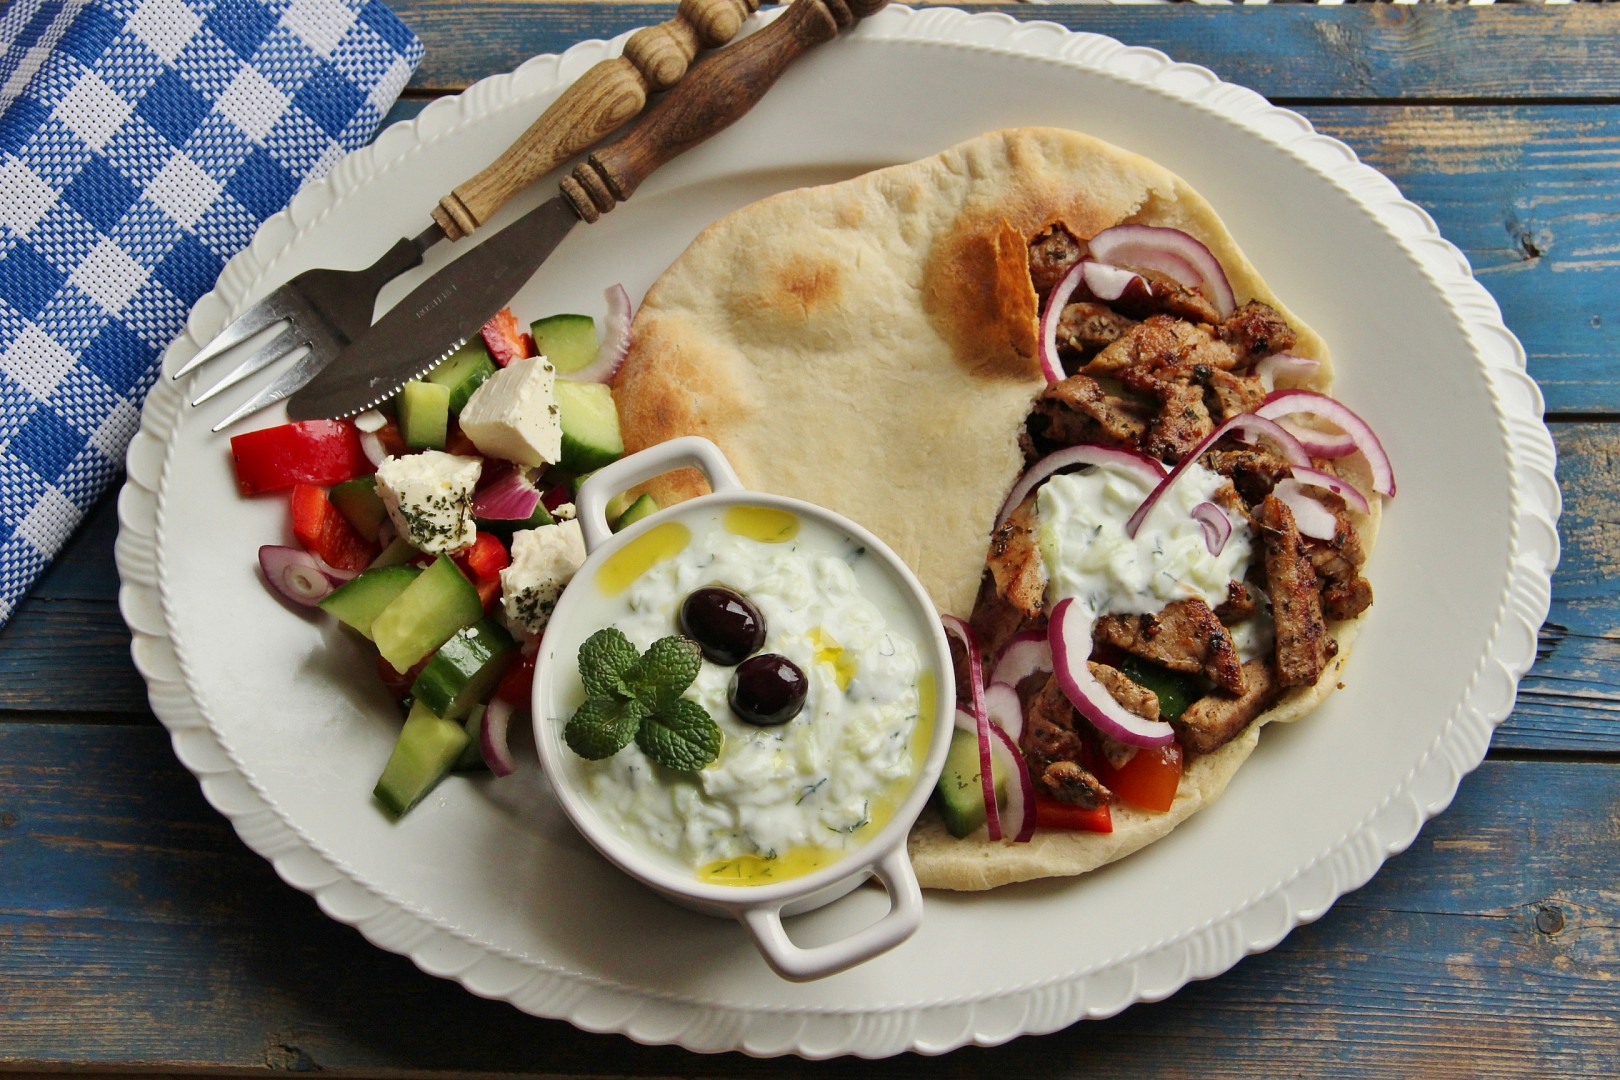 Řecké menu - gyros, tzatziki, řecký salát, pita